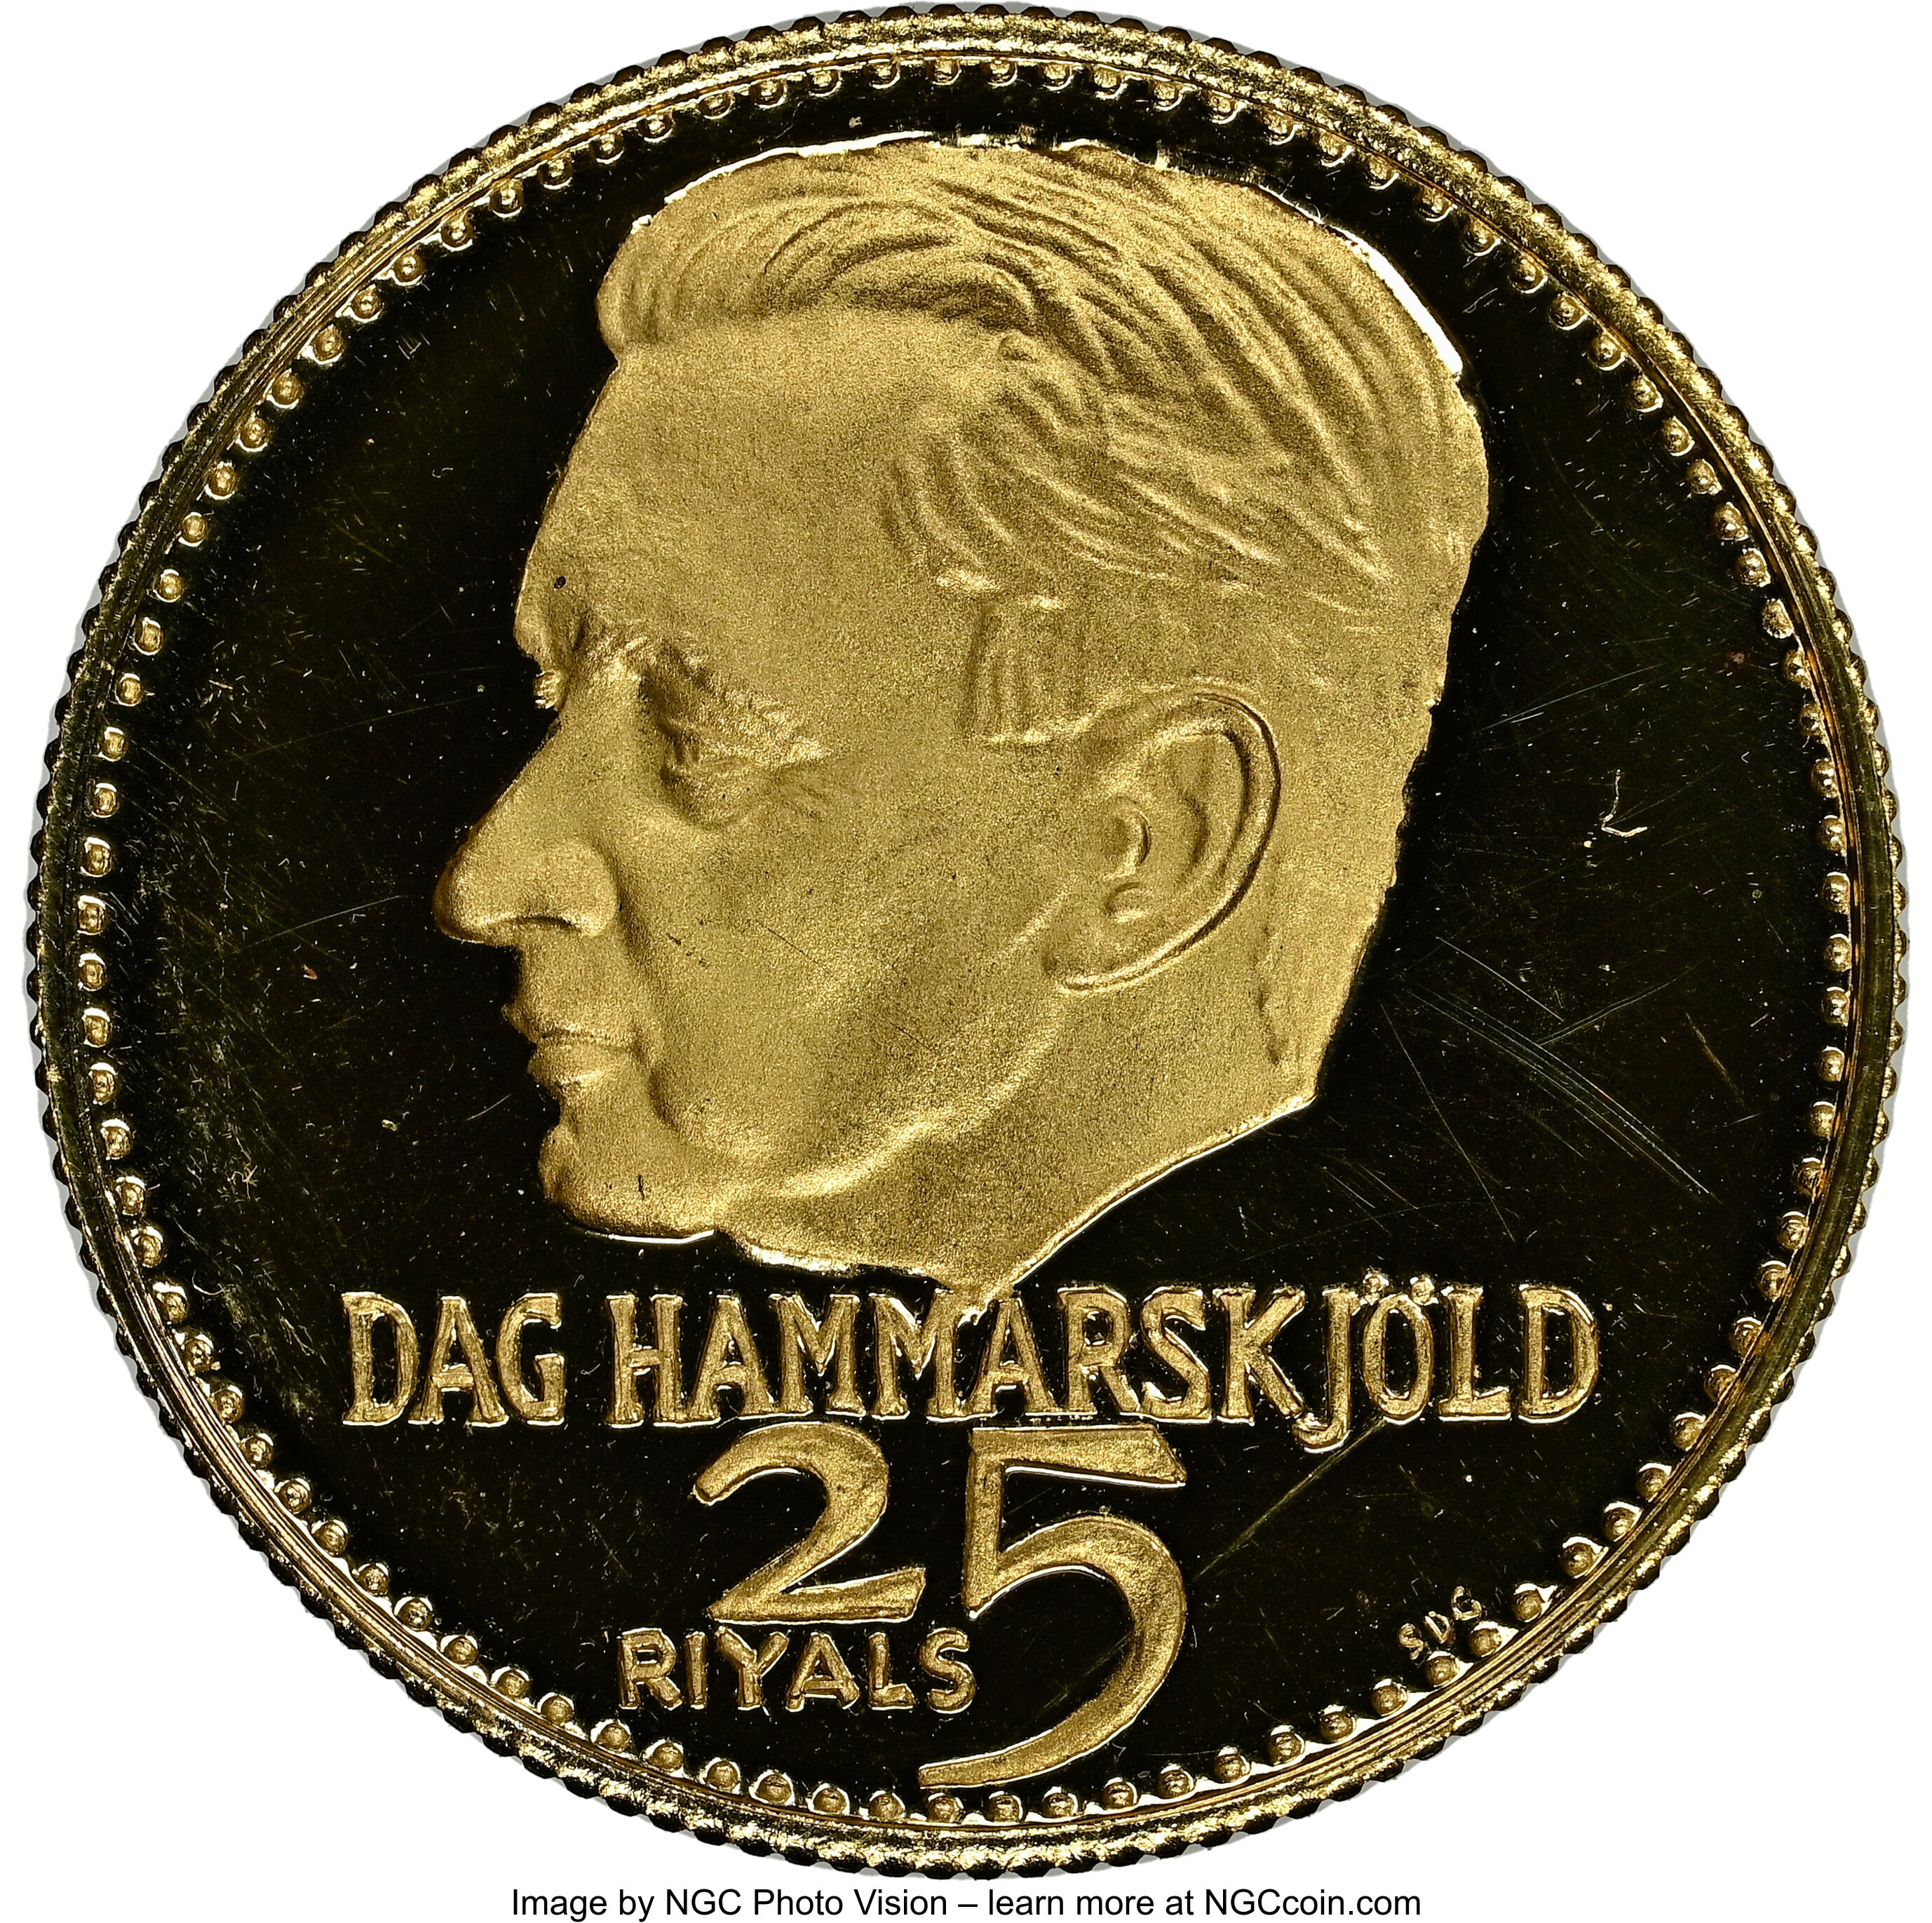 25 riyals - Dag Hammarskjold